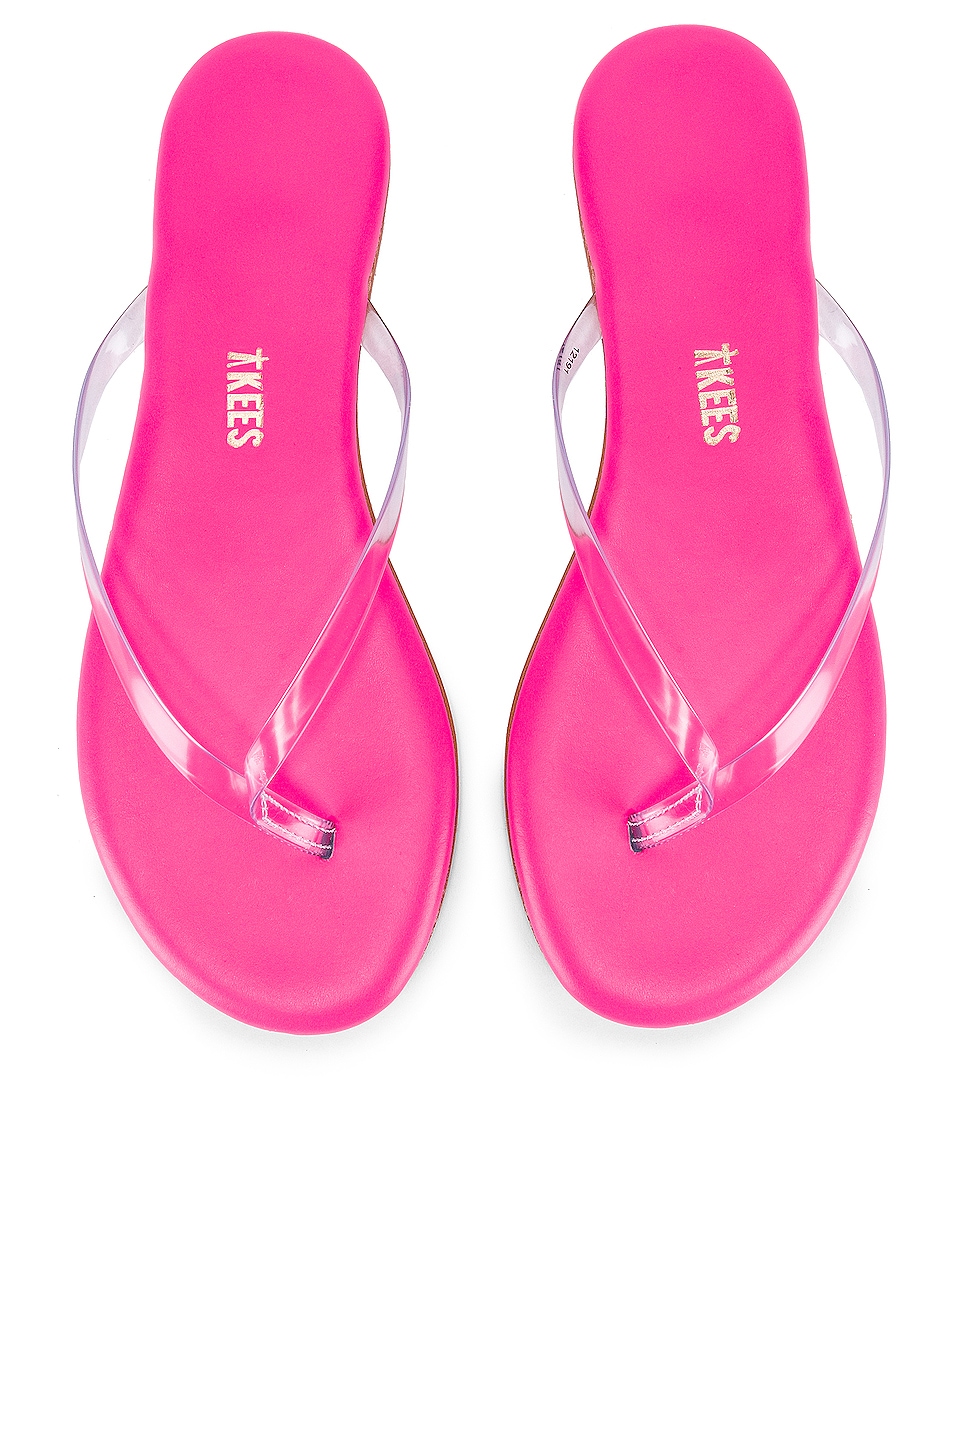 neon pink flip flops